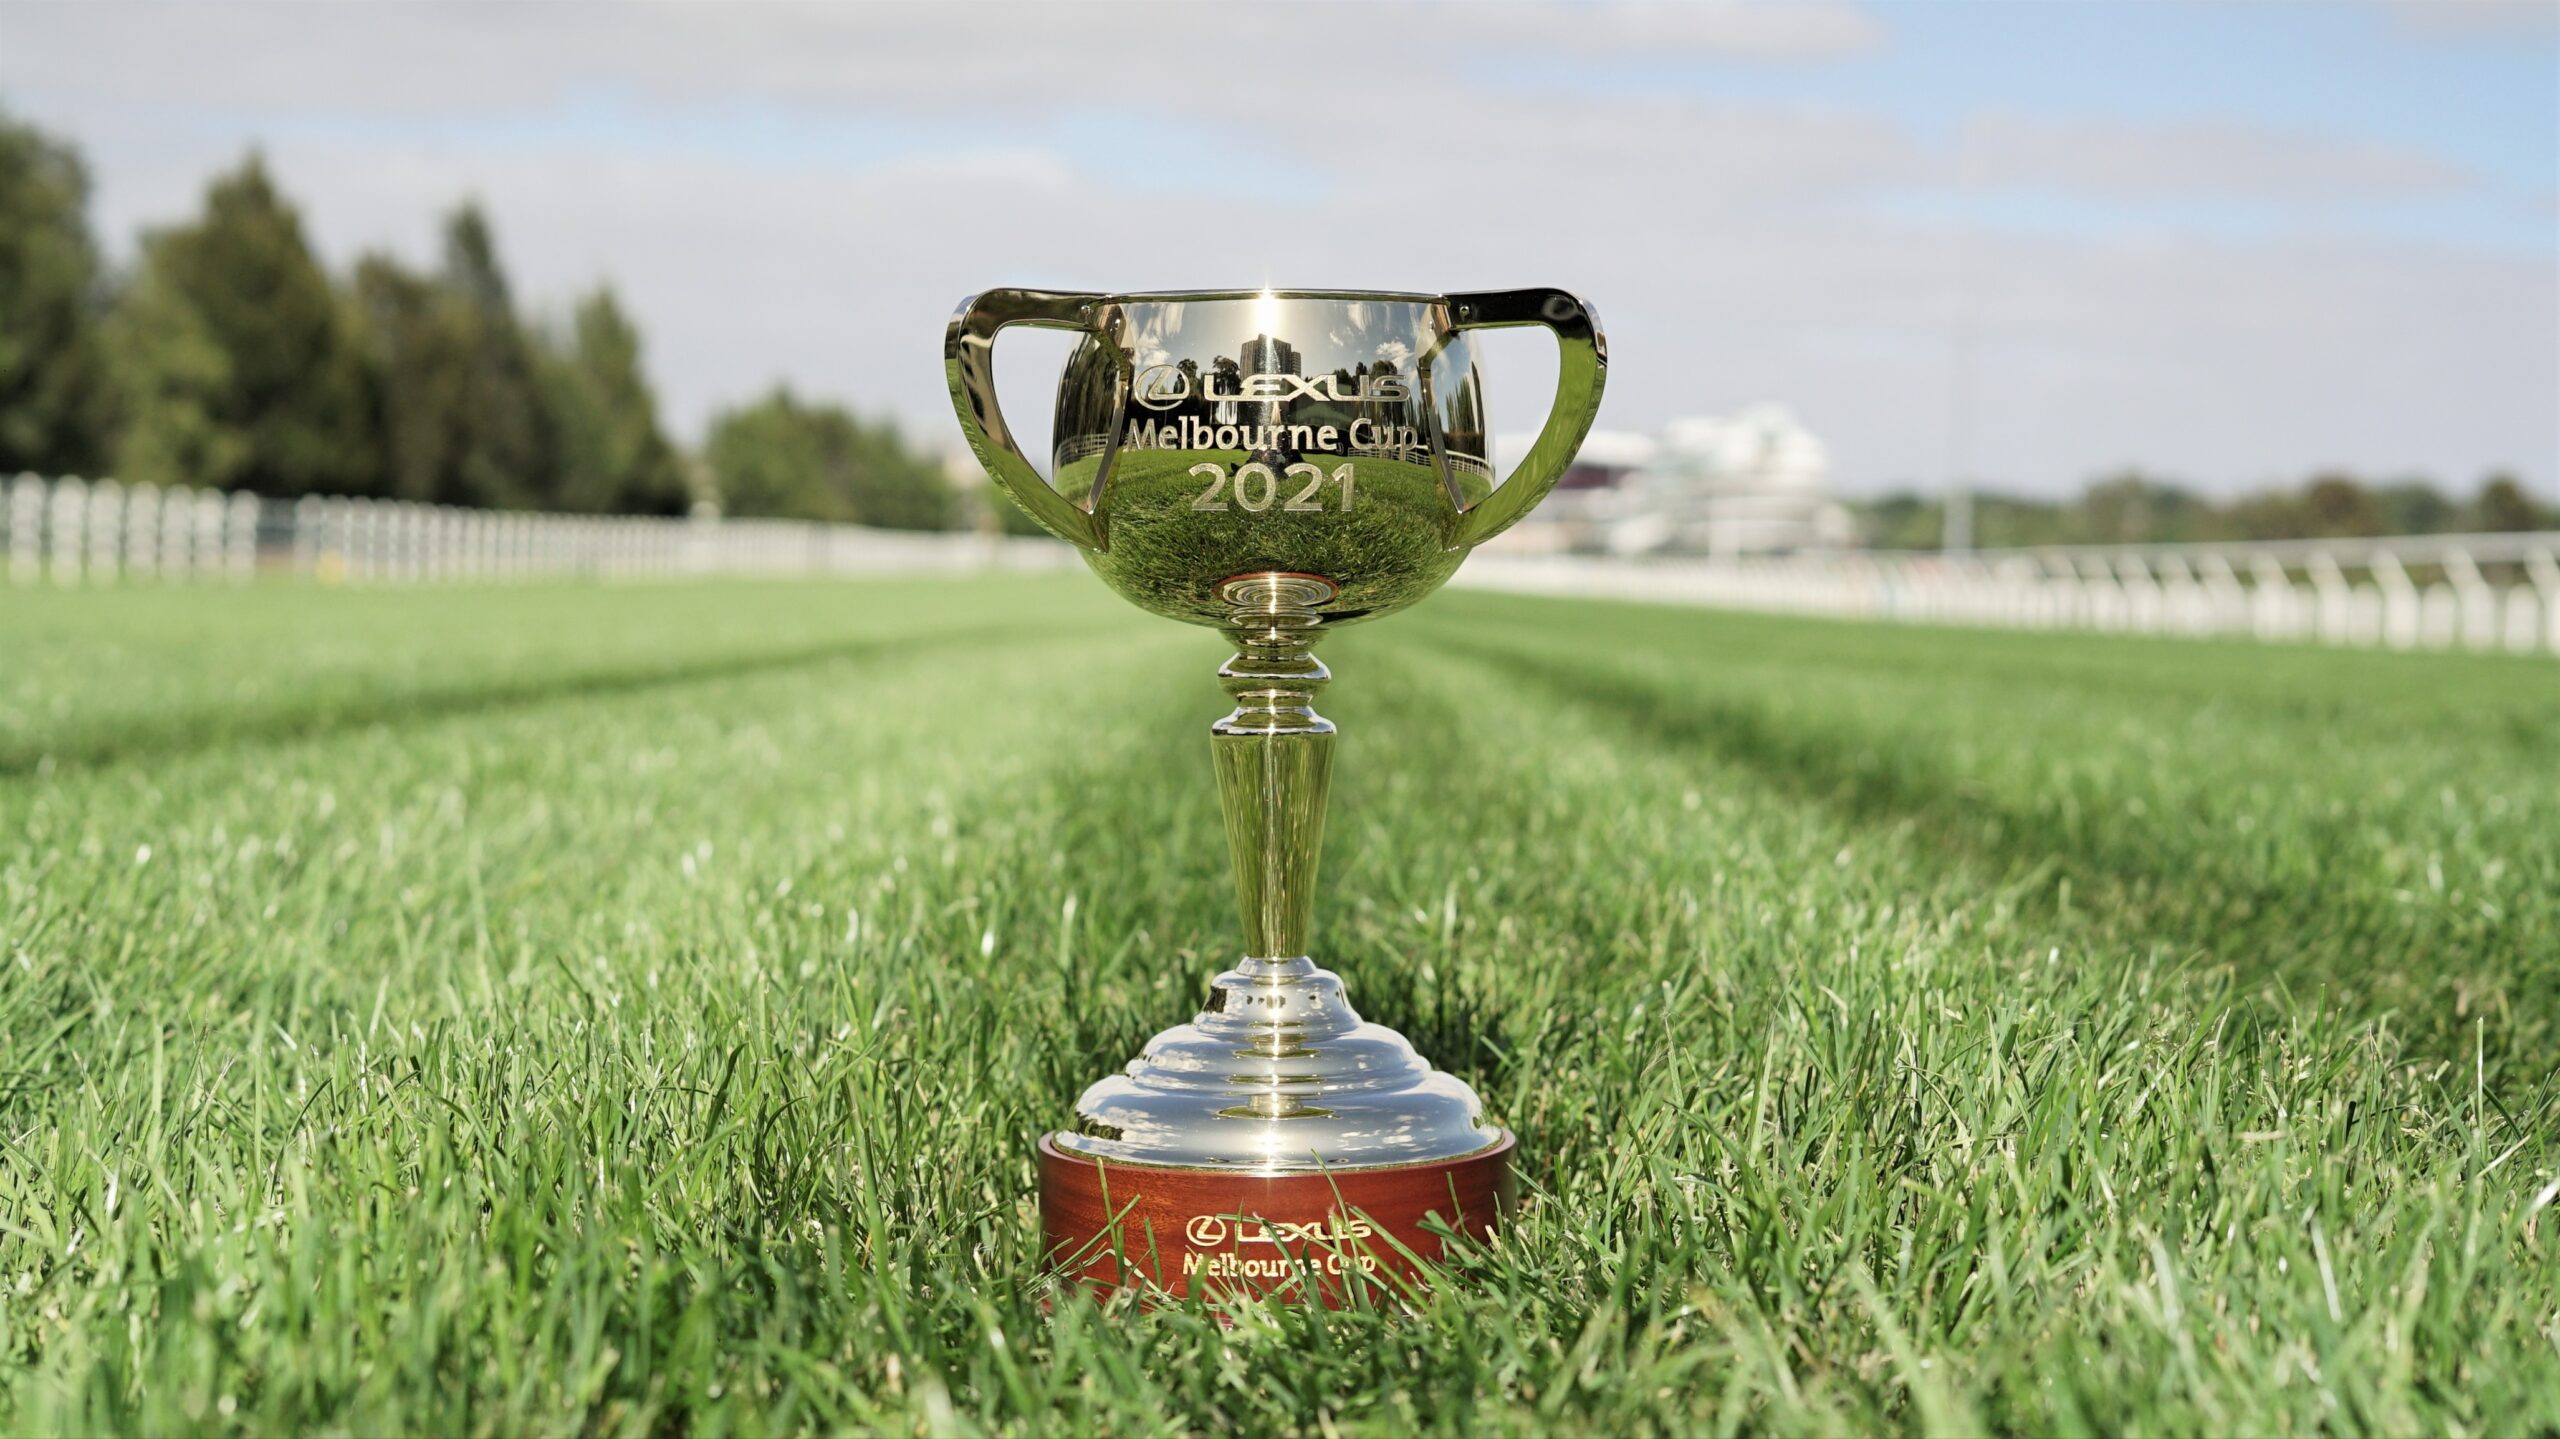 The Lexus Melbourne Cup